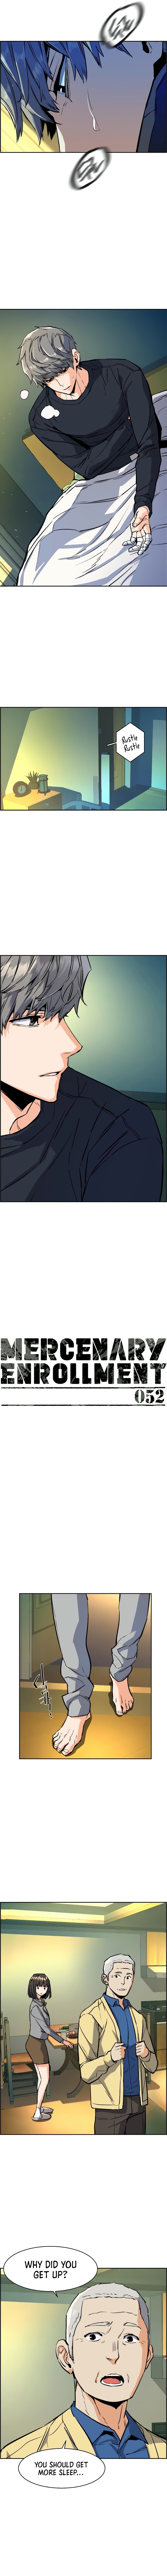 Mercenary Enrollment image